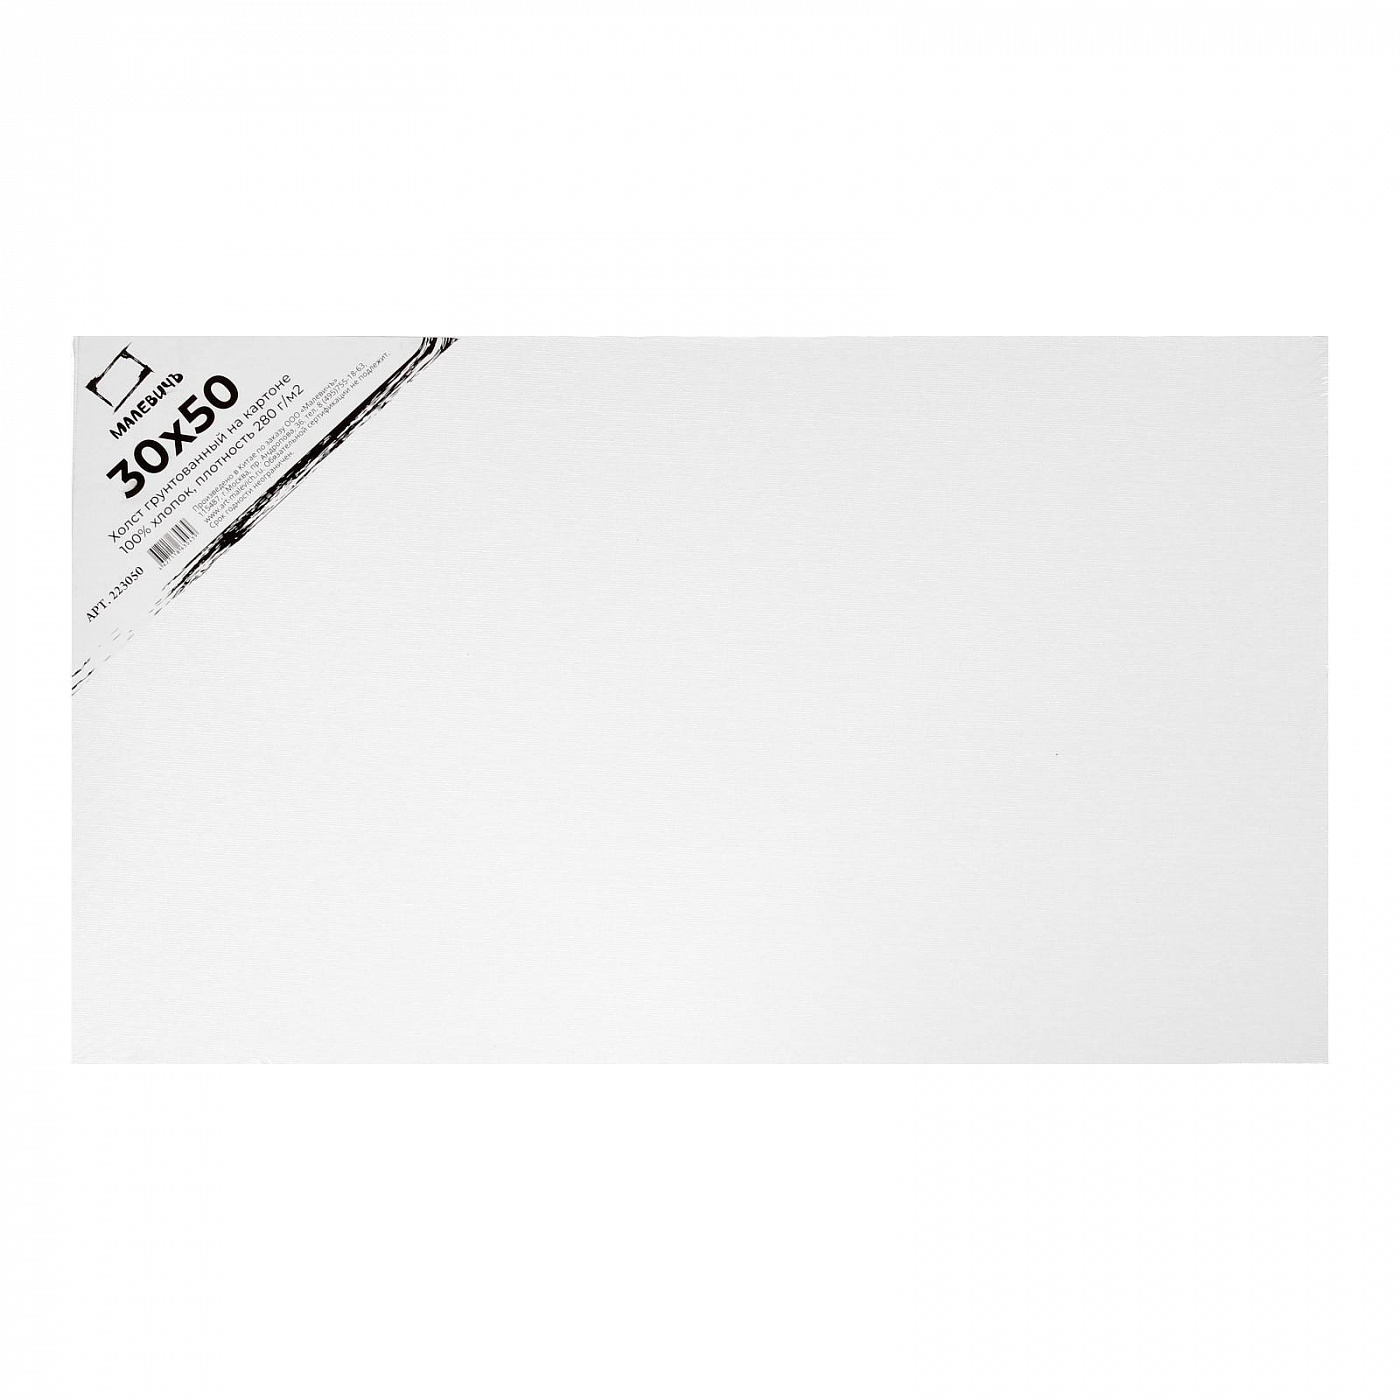 Холст грунтованный на картоне Малевичъ 30x50 см прыжок jump каталог выставки филиппа халсмана